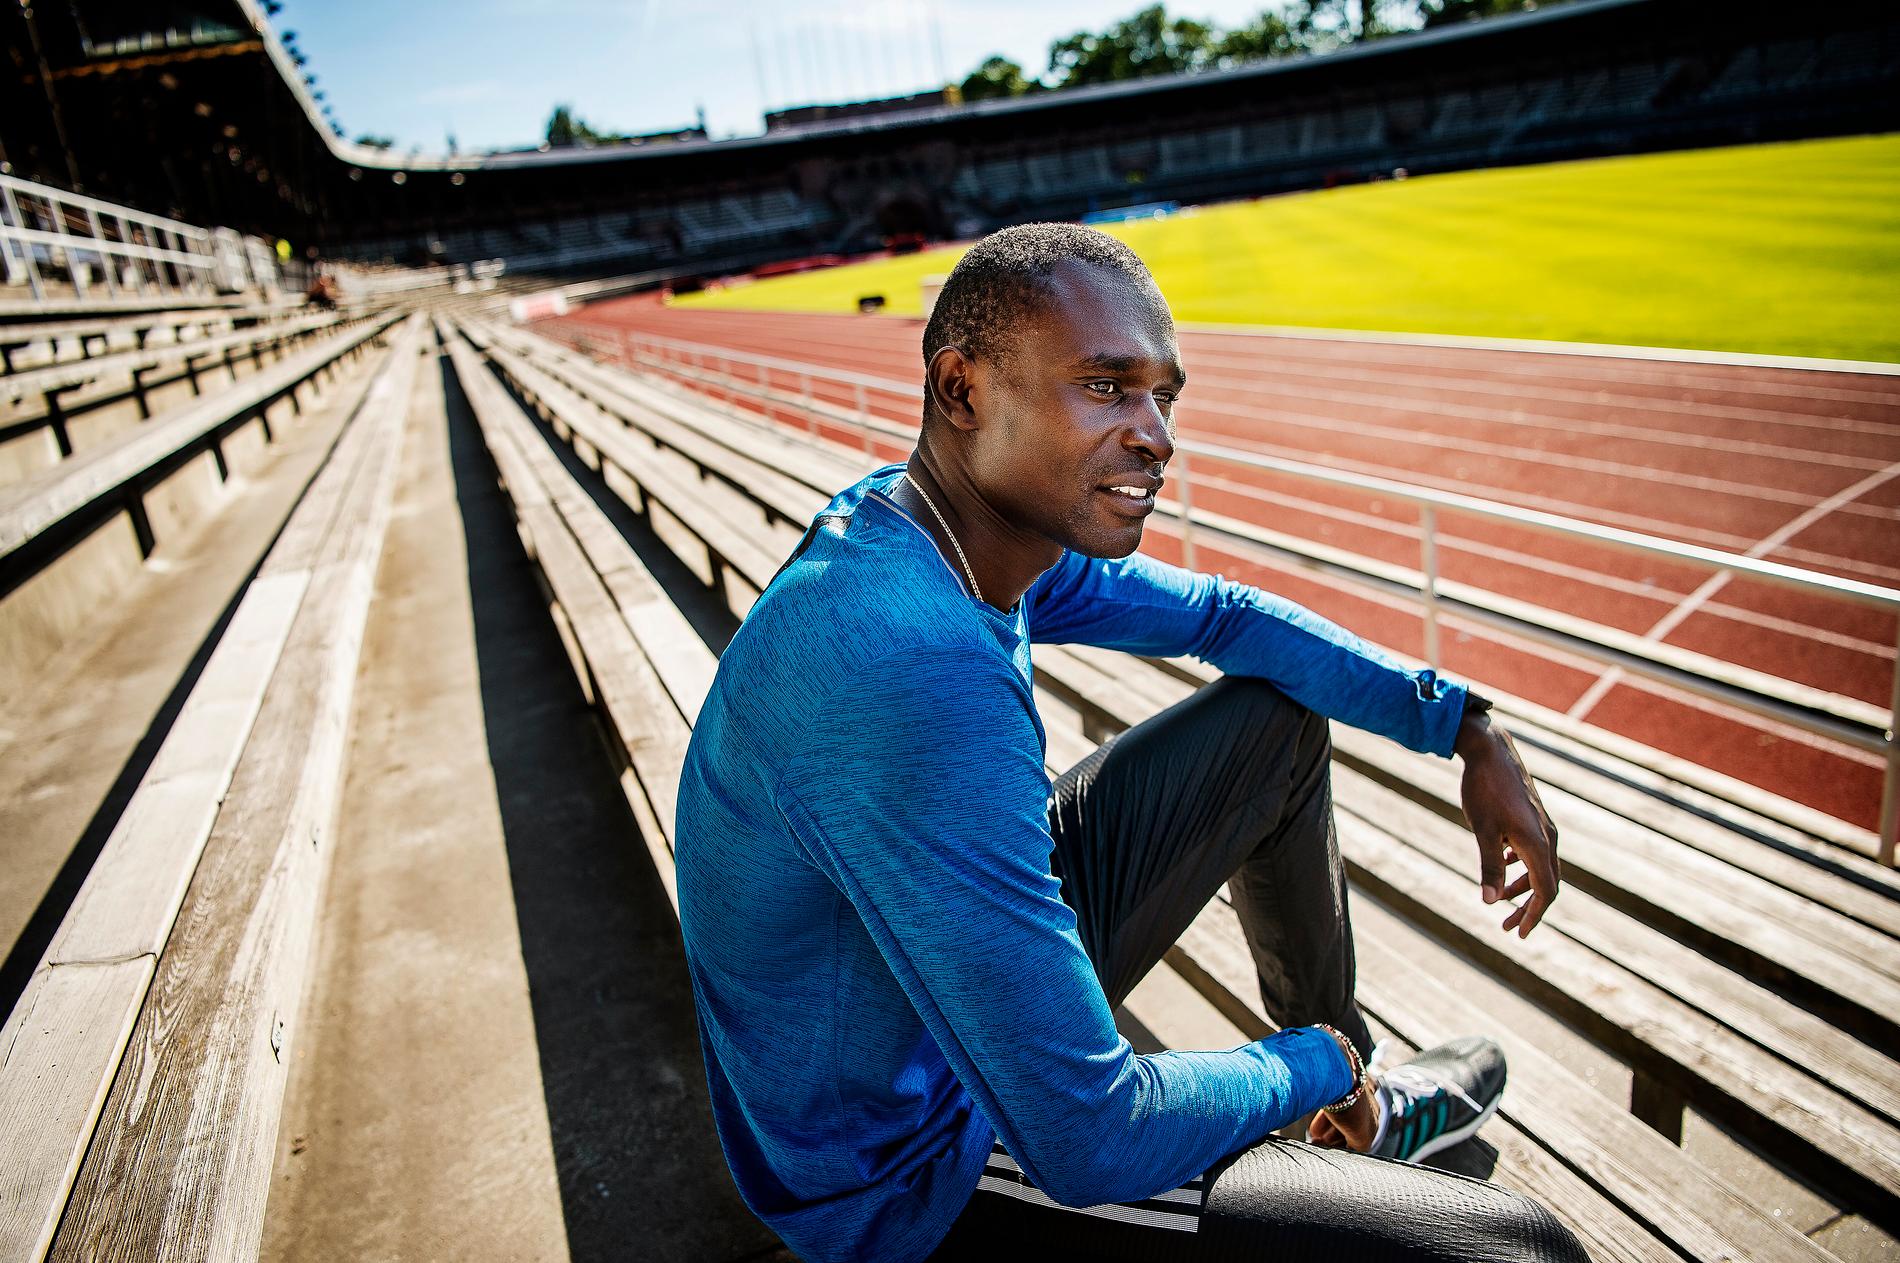 David Rudisha är på plats i Stockholm för att försöka förbättra sitt årsbästa inför OS. Samtidigt kämpar hans Kenya mot ständiga dopnings­problem. ”Det är ett krig som måste föras på flera fronter”, säger världslöparen till Sportbladet.